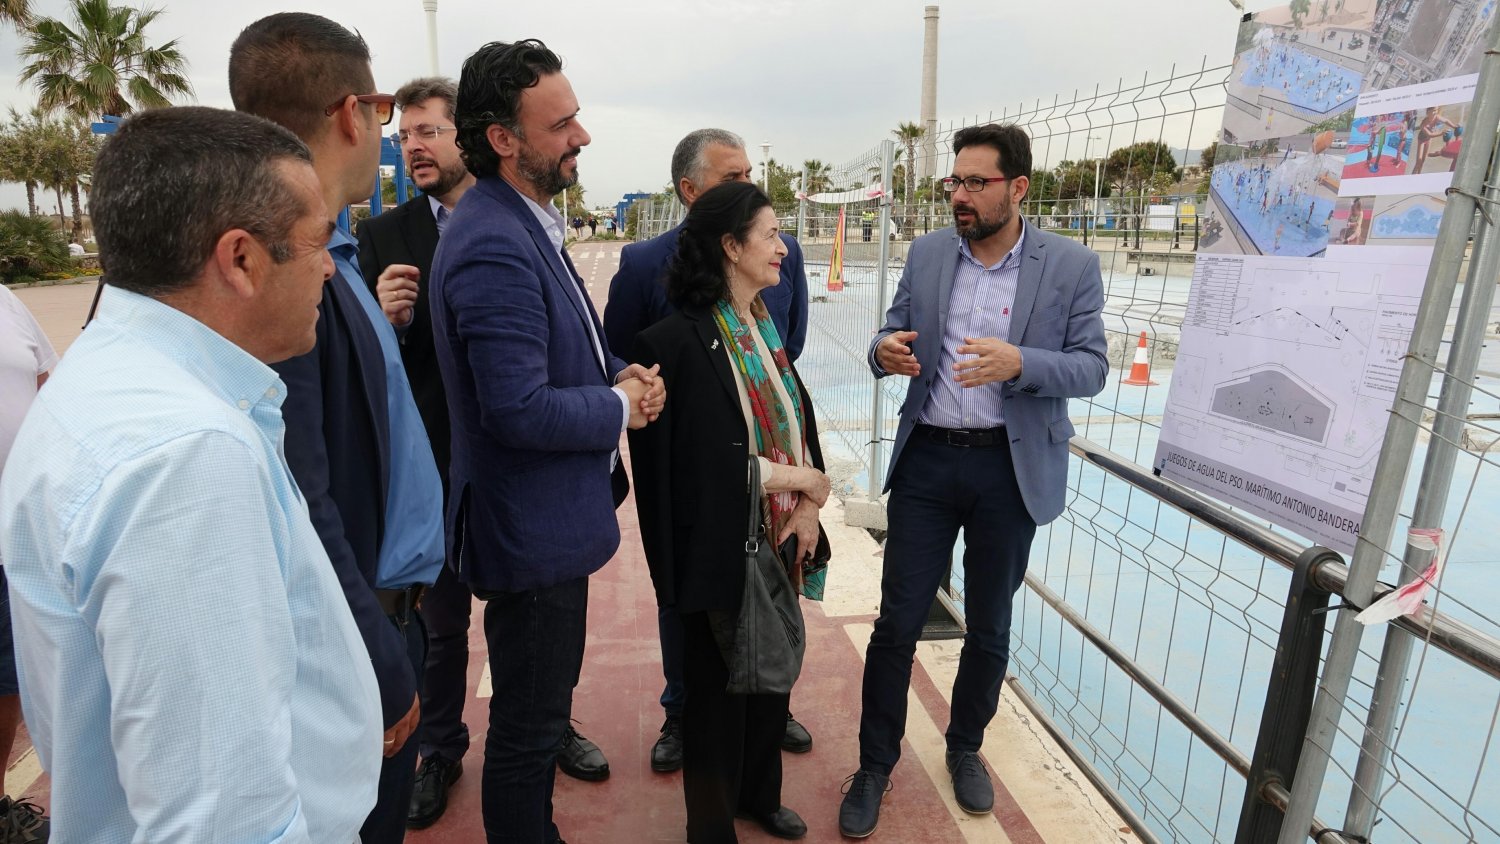 El Ayuntamiento renueva el parque del agua del Paseo Marítimo Antonio Banderas con un sistema innovador de juegas acuáticos